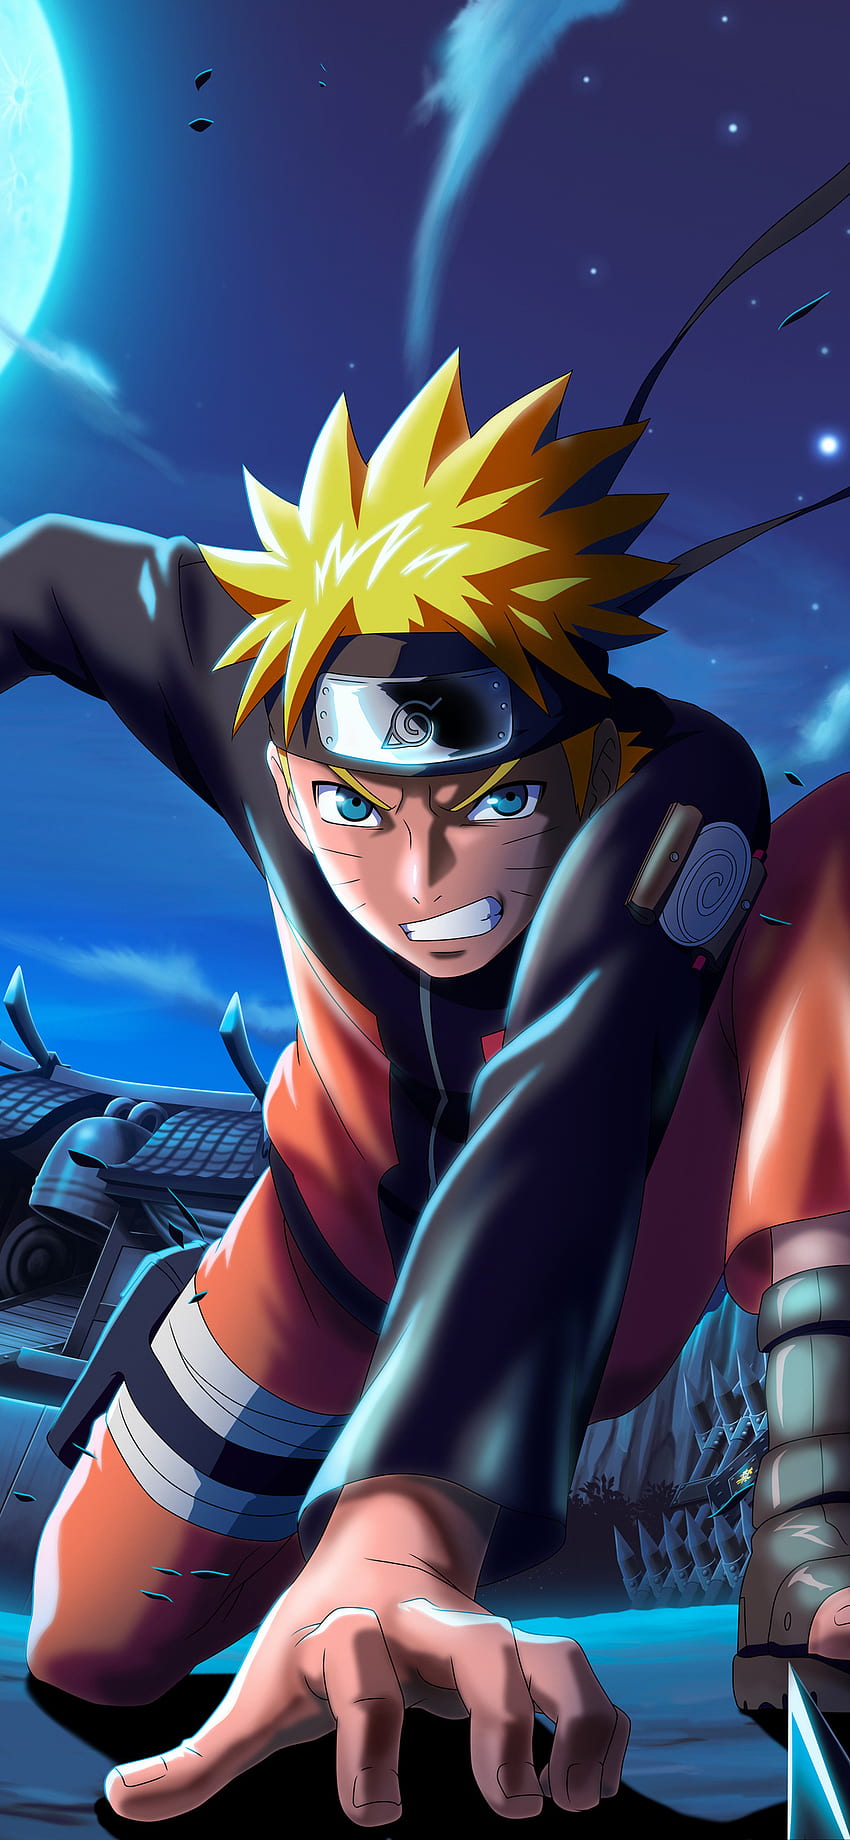 Naruto X Boruto Ninja Voltage là trò chơi đình đám được yêu thích trên iPhone XS MAX. Hình nền hợp đồng này sẽ mang lại cho bạn một phong cách chiến đấu đầy tính năng động và tràn đầy sức sống. Bạn sẽ có một trải nghiệm tuyệt vời đối với màn hình smartphone của mình.